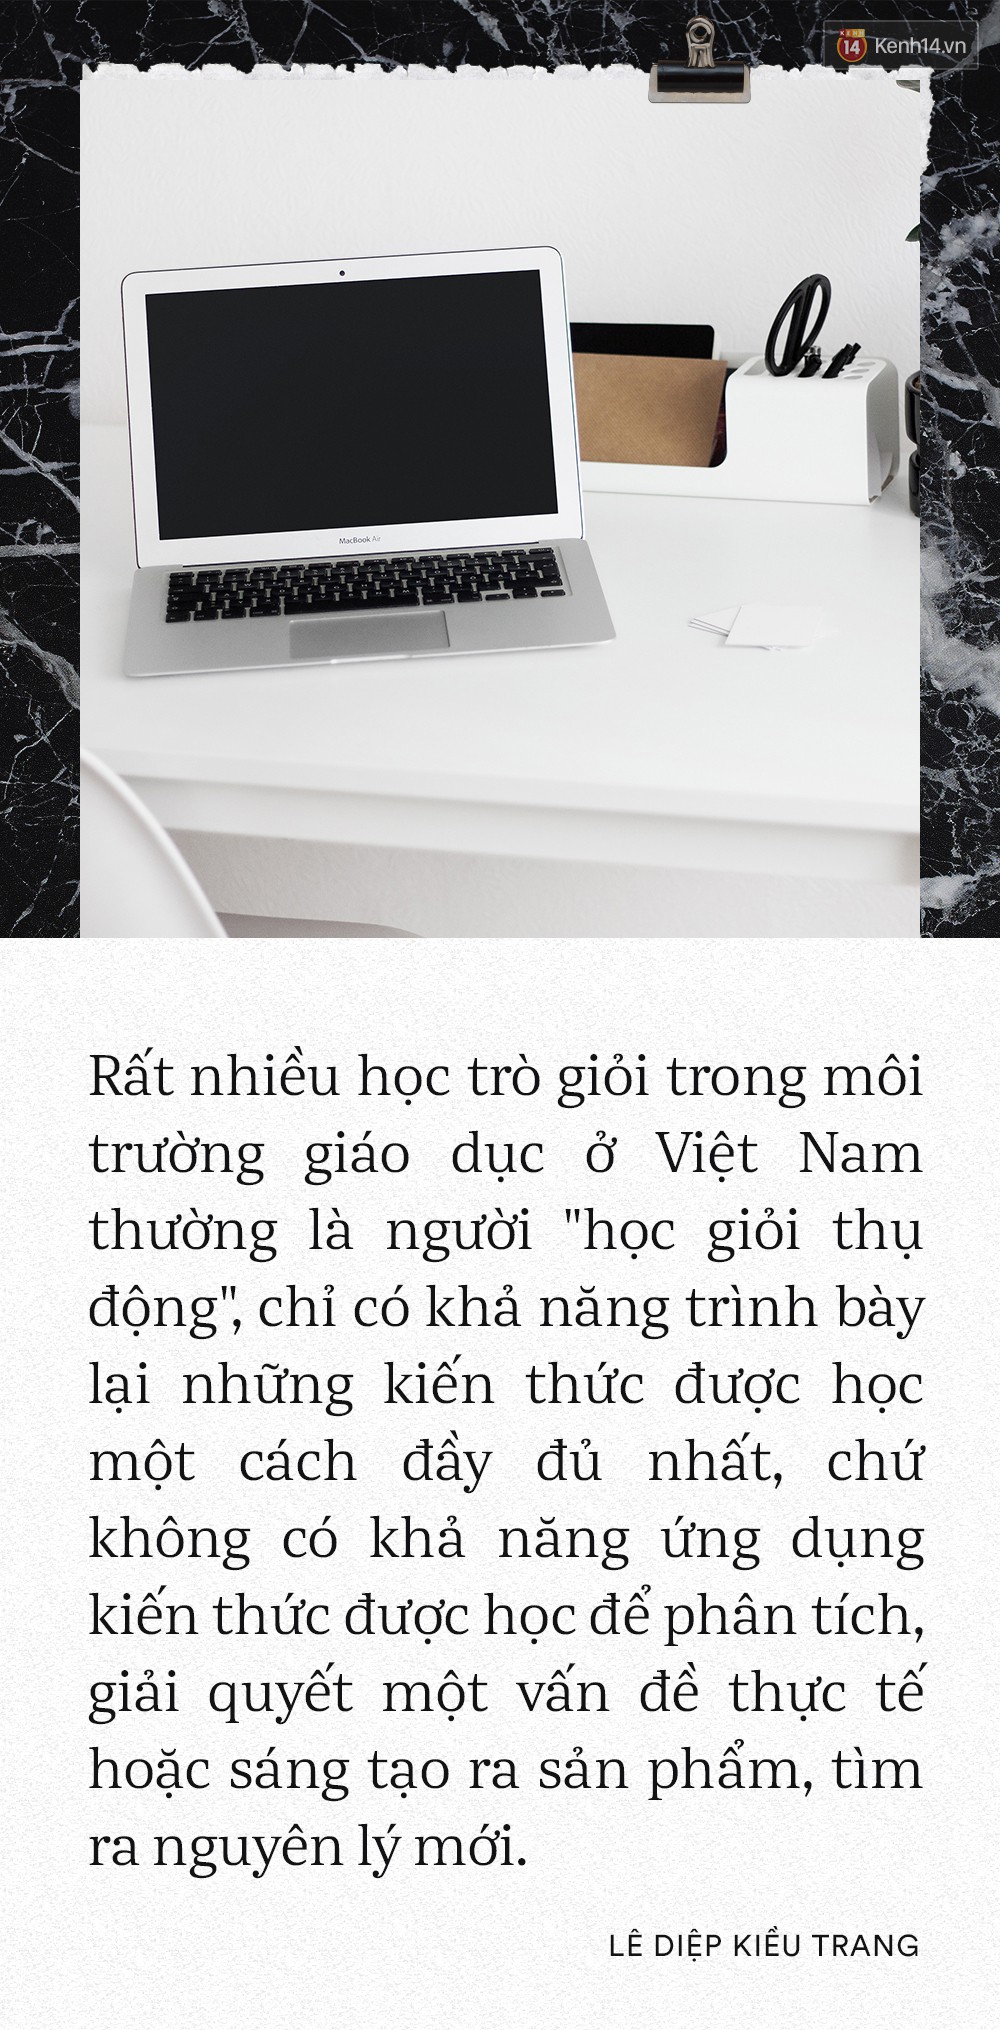 Giám đốc Facebook Việt Nam Lê Diệp Kiều Trang: Học giỏi không có nghĩa là làm việc giỏi - Ảnh 10.